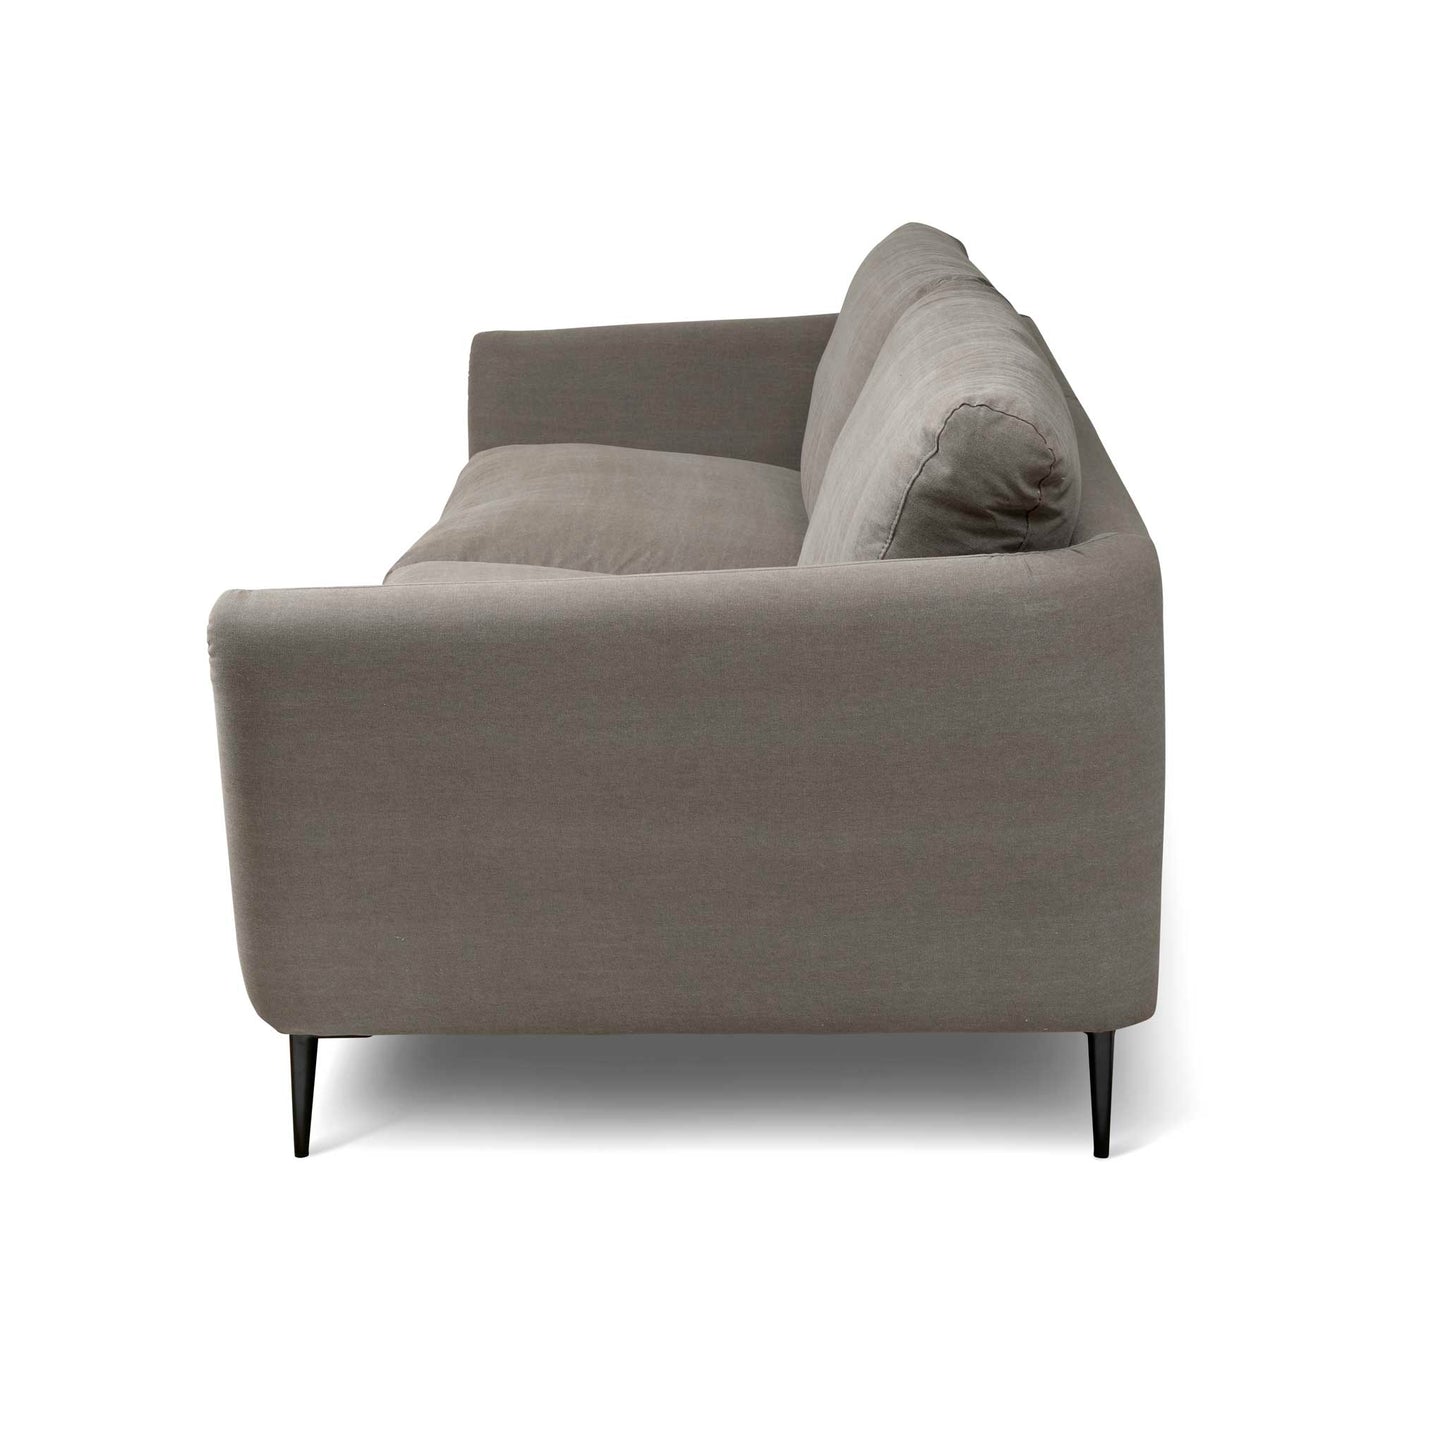 Stor soffa i brungrå bomull med runda mjuka linjer